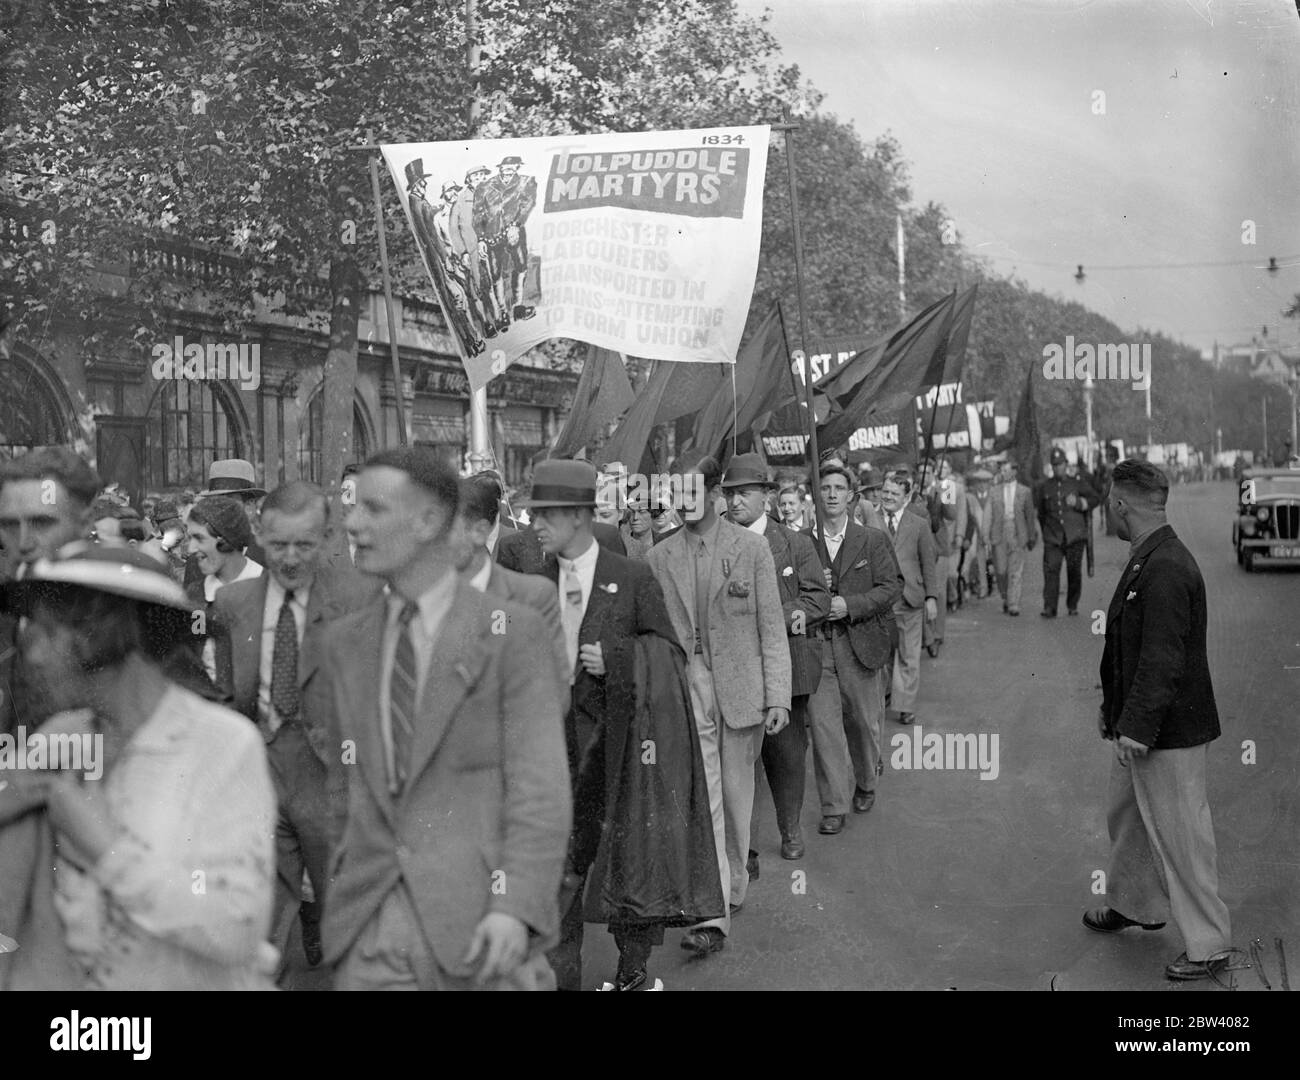 Englische Geschichte in Parade durch Londons Straßen. Hunderte von Bannern, die die englische Geschichte von Magna Carta bis zum Generalstreik darstellen, wurden von Kommunisten getragen, die vom Victoria Embankment zum Hyde Park marschierten. Foto zeigt, eine "Tolpuddle Märtyrer" in Prozession getragen. 20. September 1936 Stockfoto